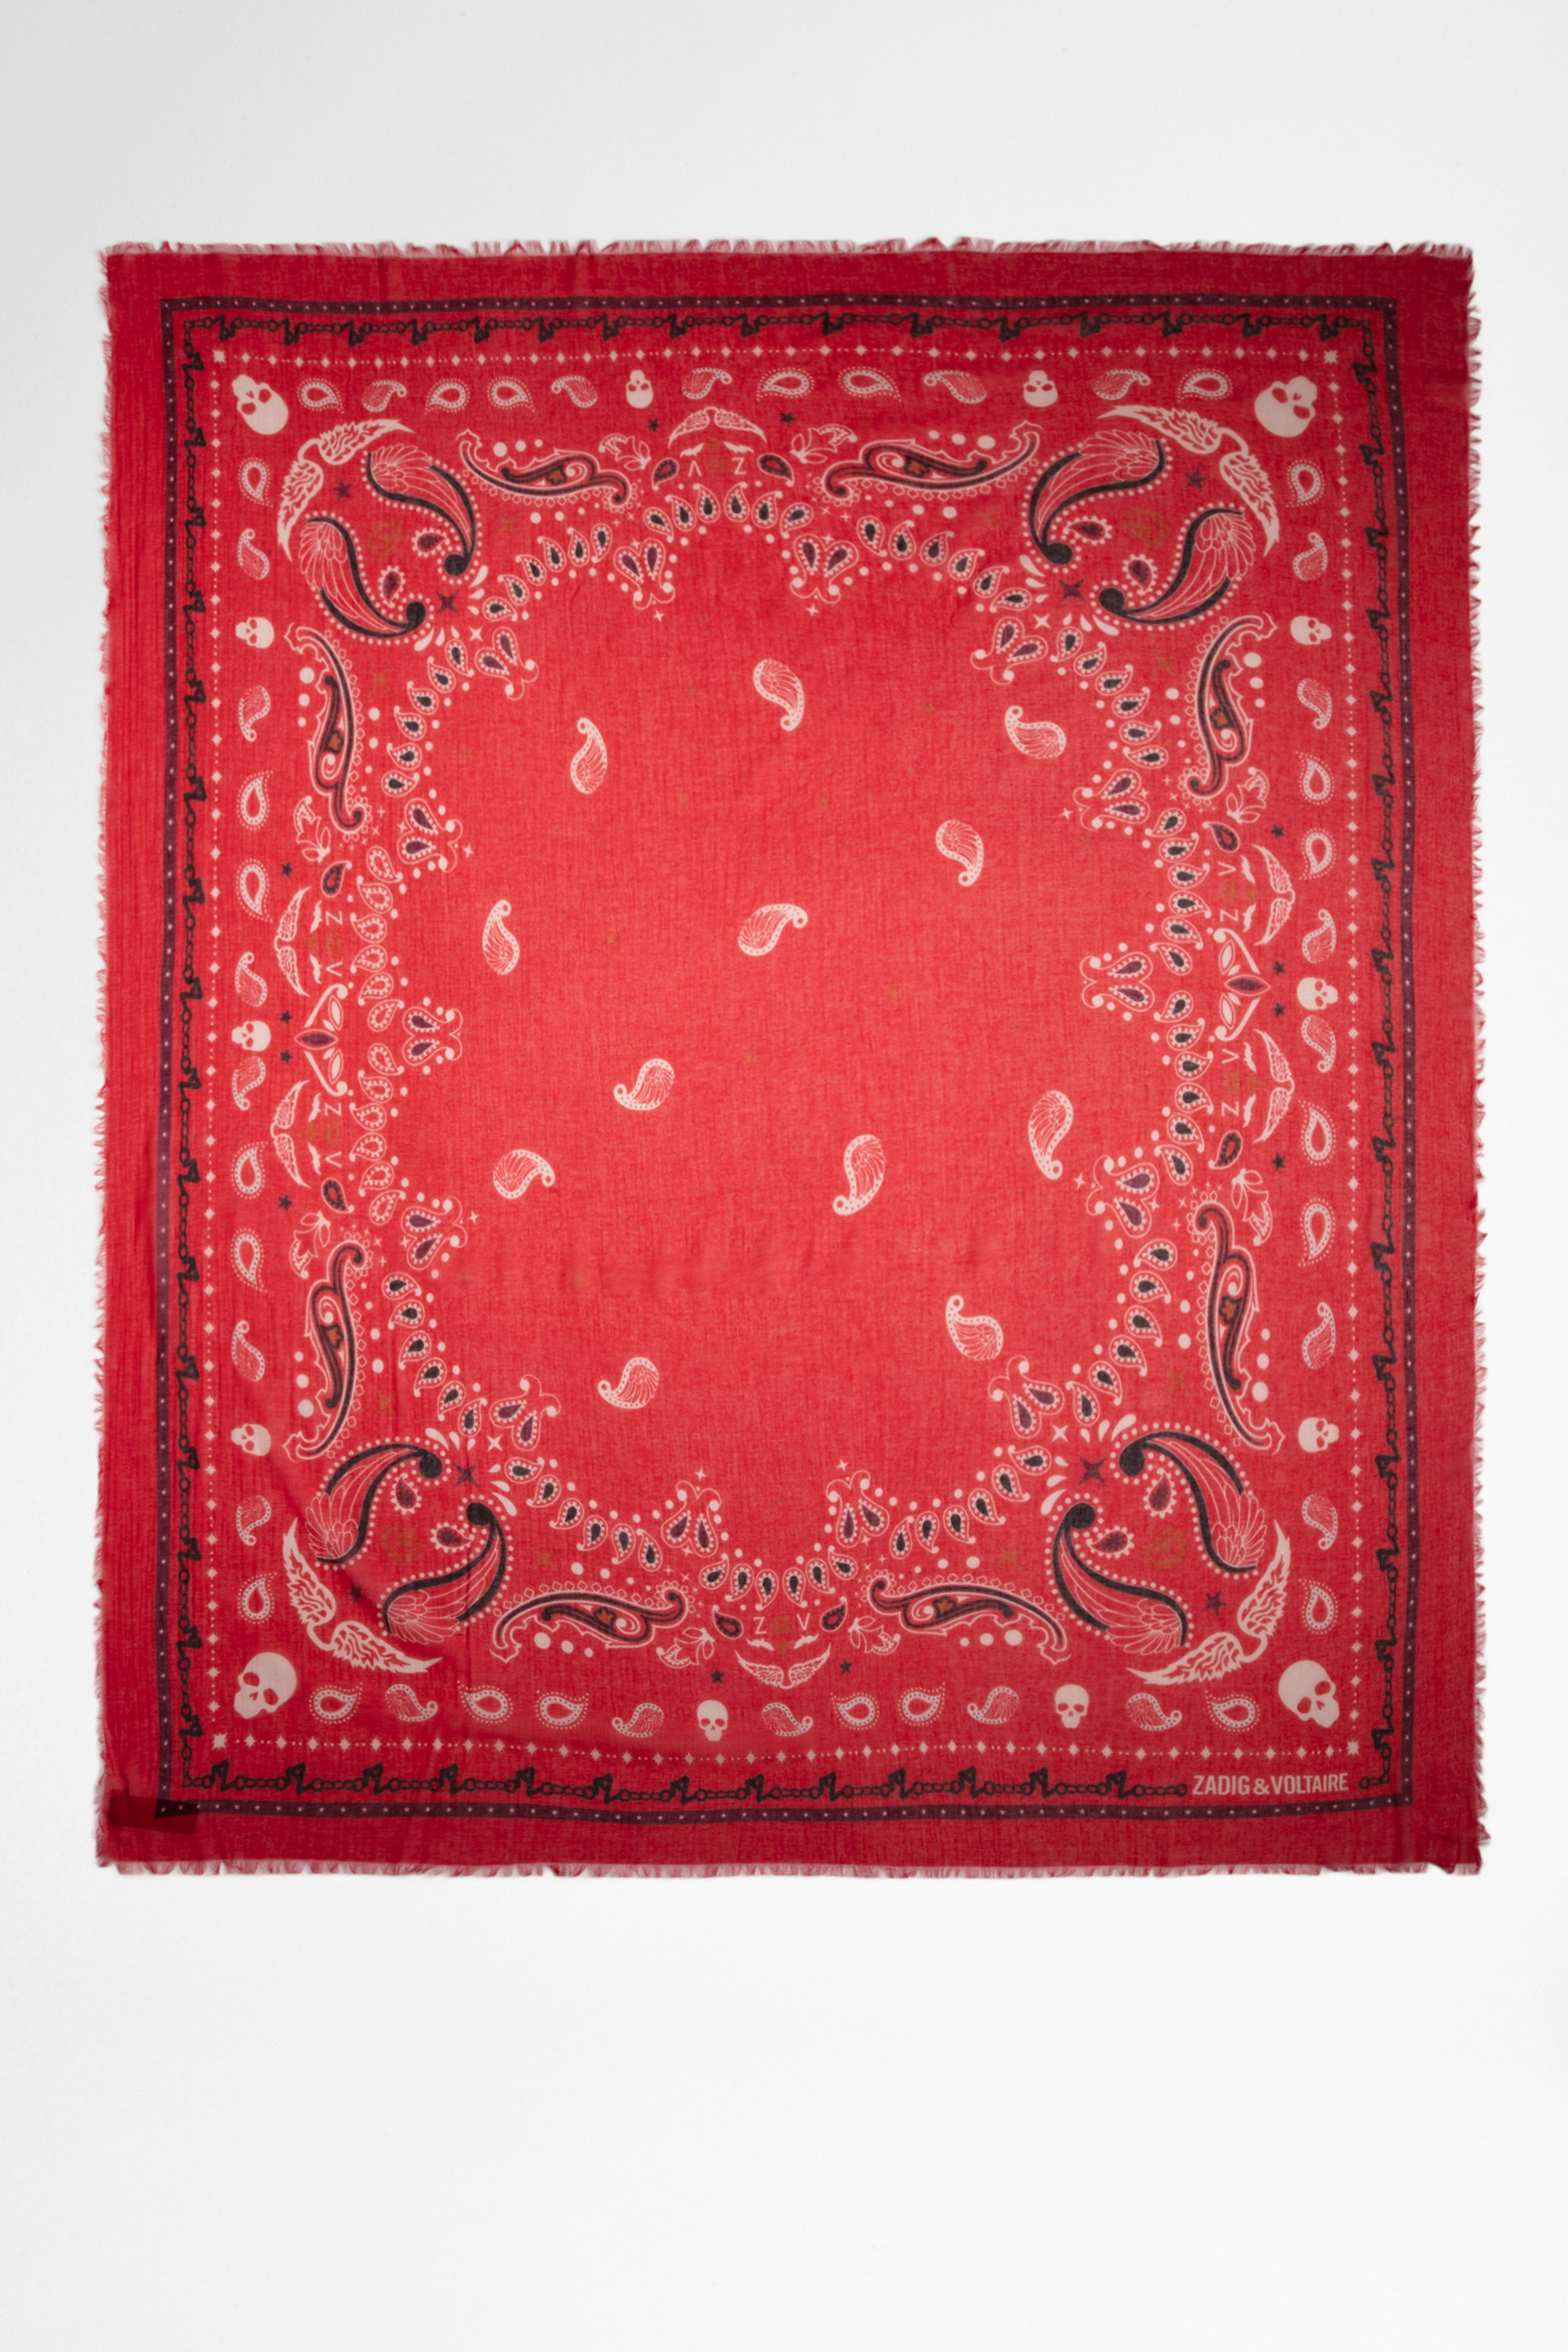 Halstuch Delta Damen-Halstuch aus Baumwolle mit rotem Bandana-Print. Dieses Produkt ist nach GOTS zertifiziert und aus Fasern aus biologischem Anbau hergestellt.